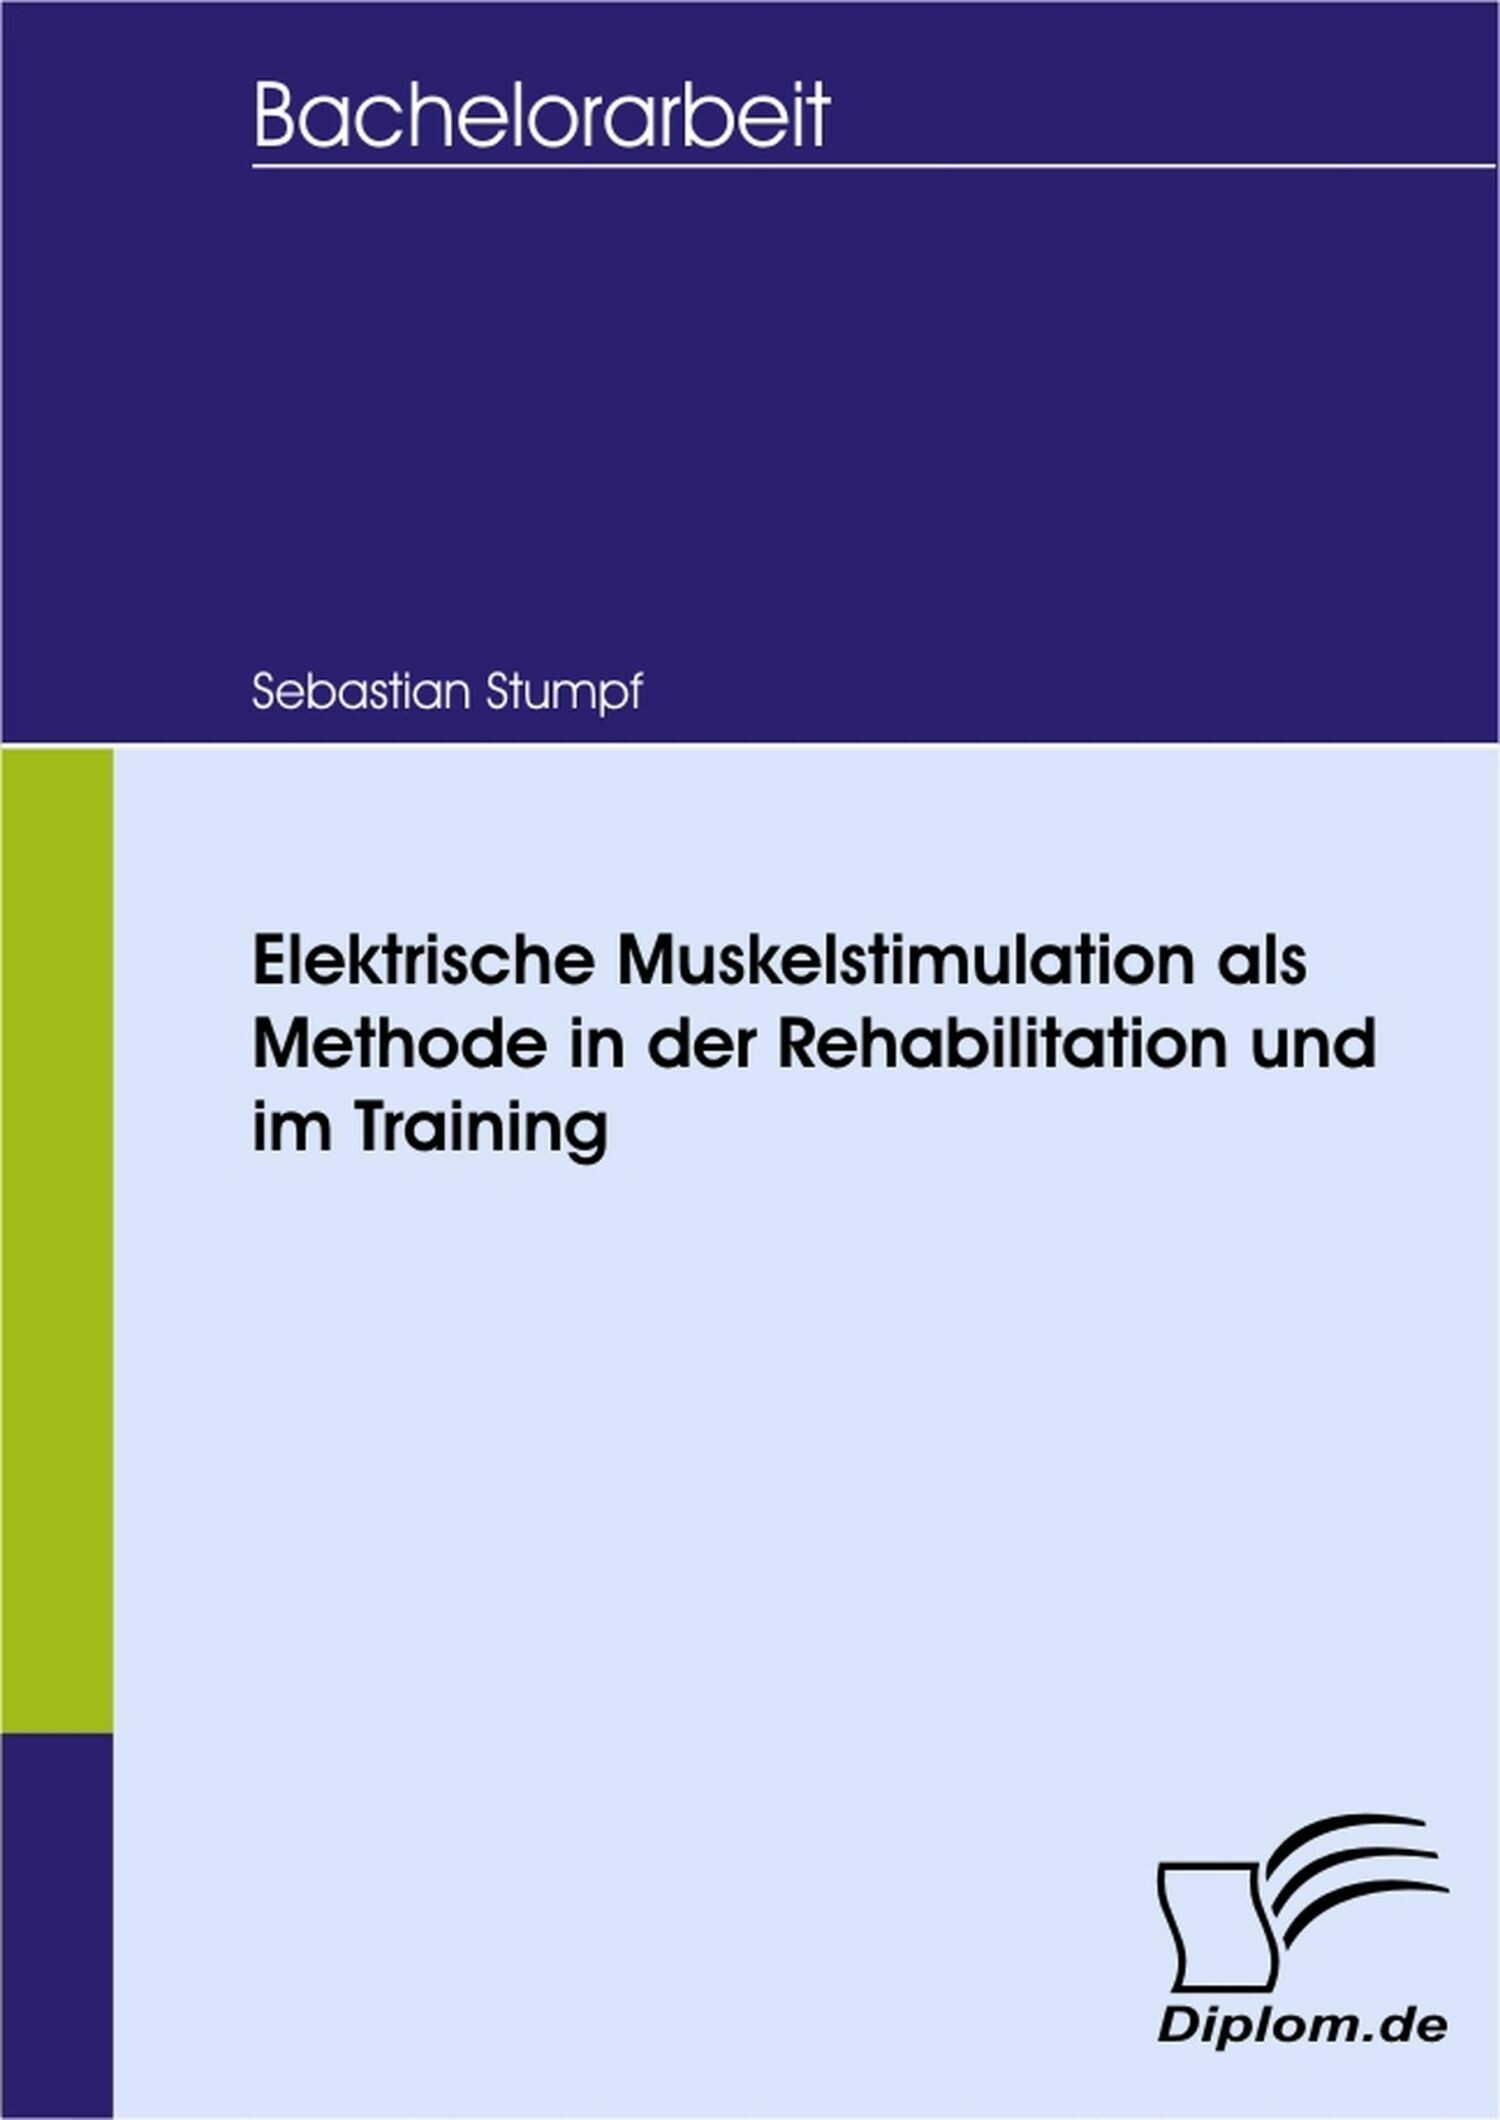 Elektrische Muskelstimulation als Methode in der Rehabilitation und im Training